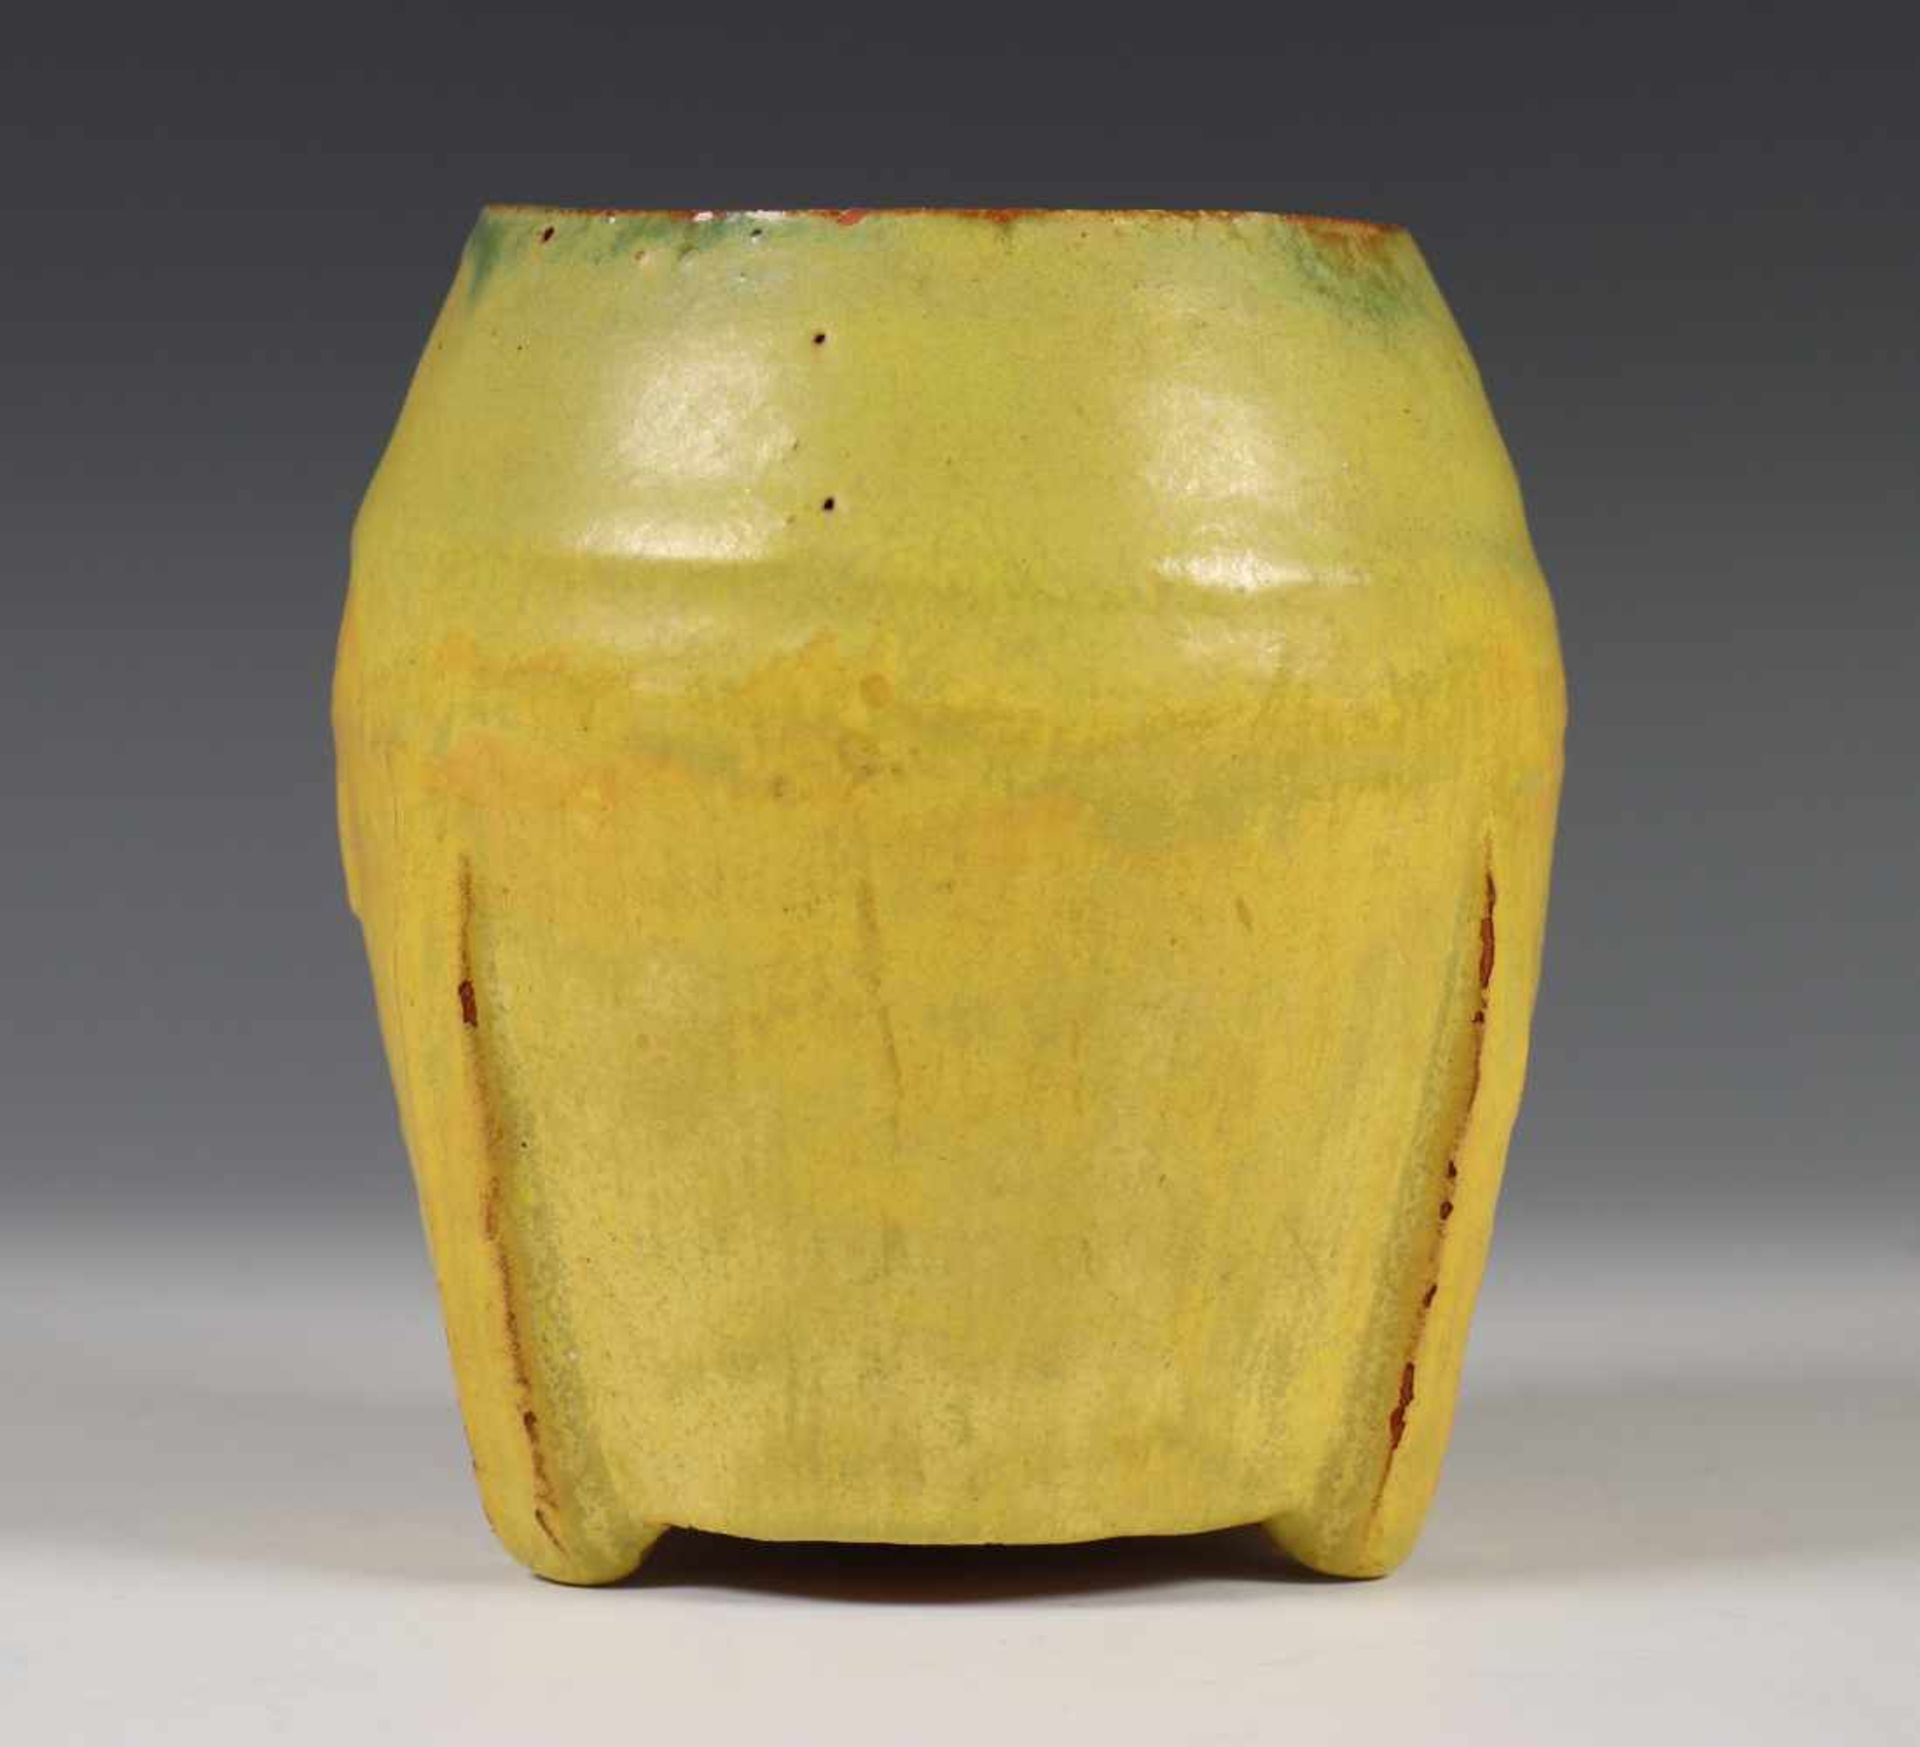 Engeland, geelgelazuurde keramieken vaas,op drie voetjes, met schildersinitiaal 'Z AC' (kleine